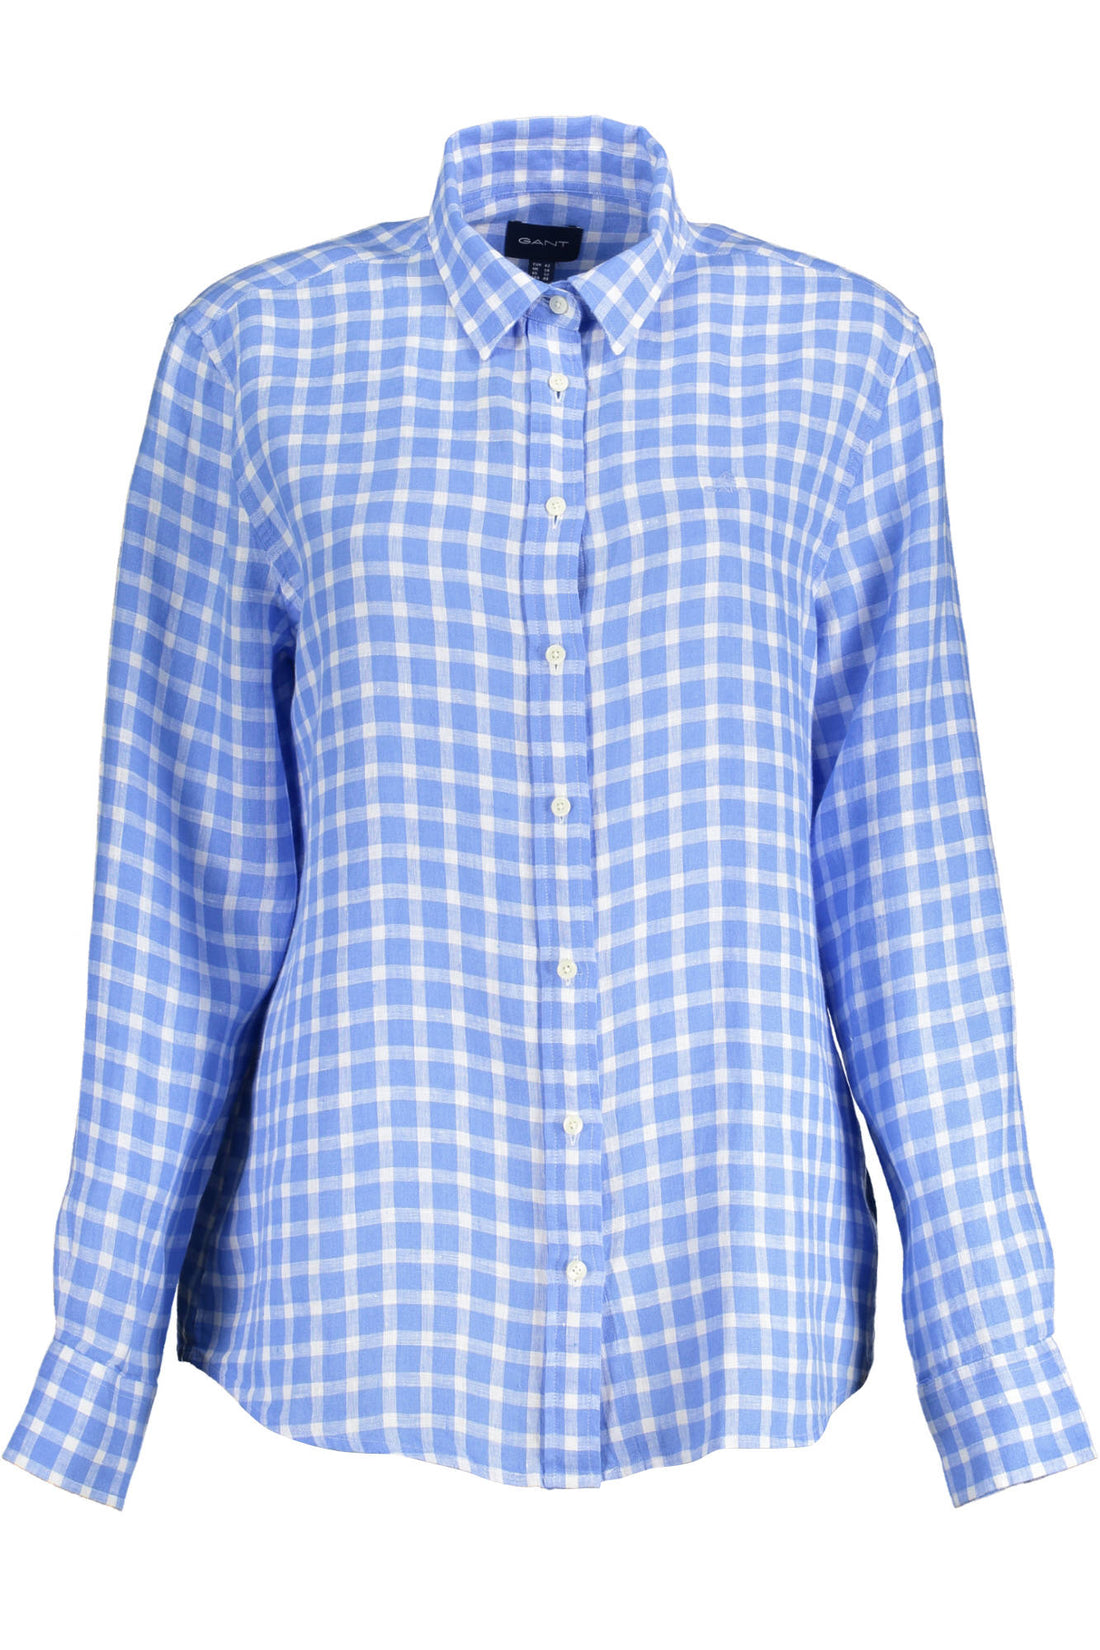 Gant Damen Hemd Blusen Freizeithemd Businesshemd, langarm